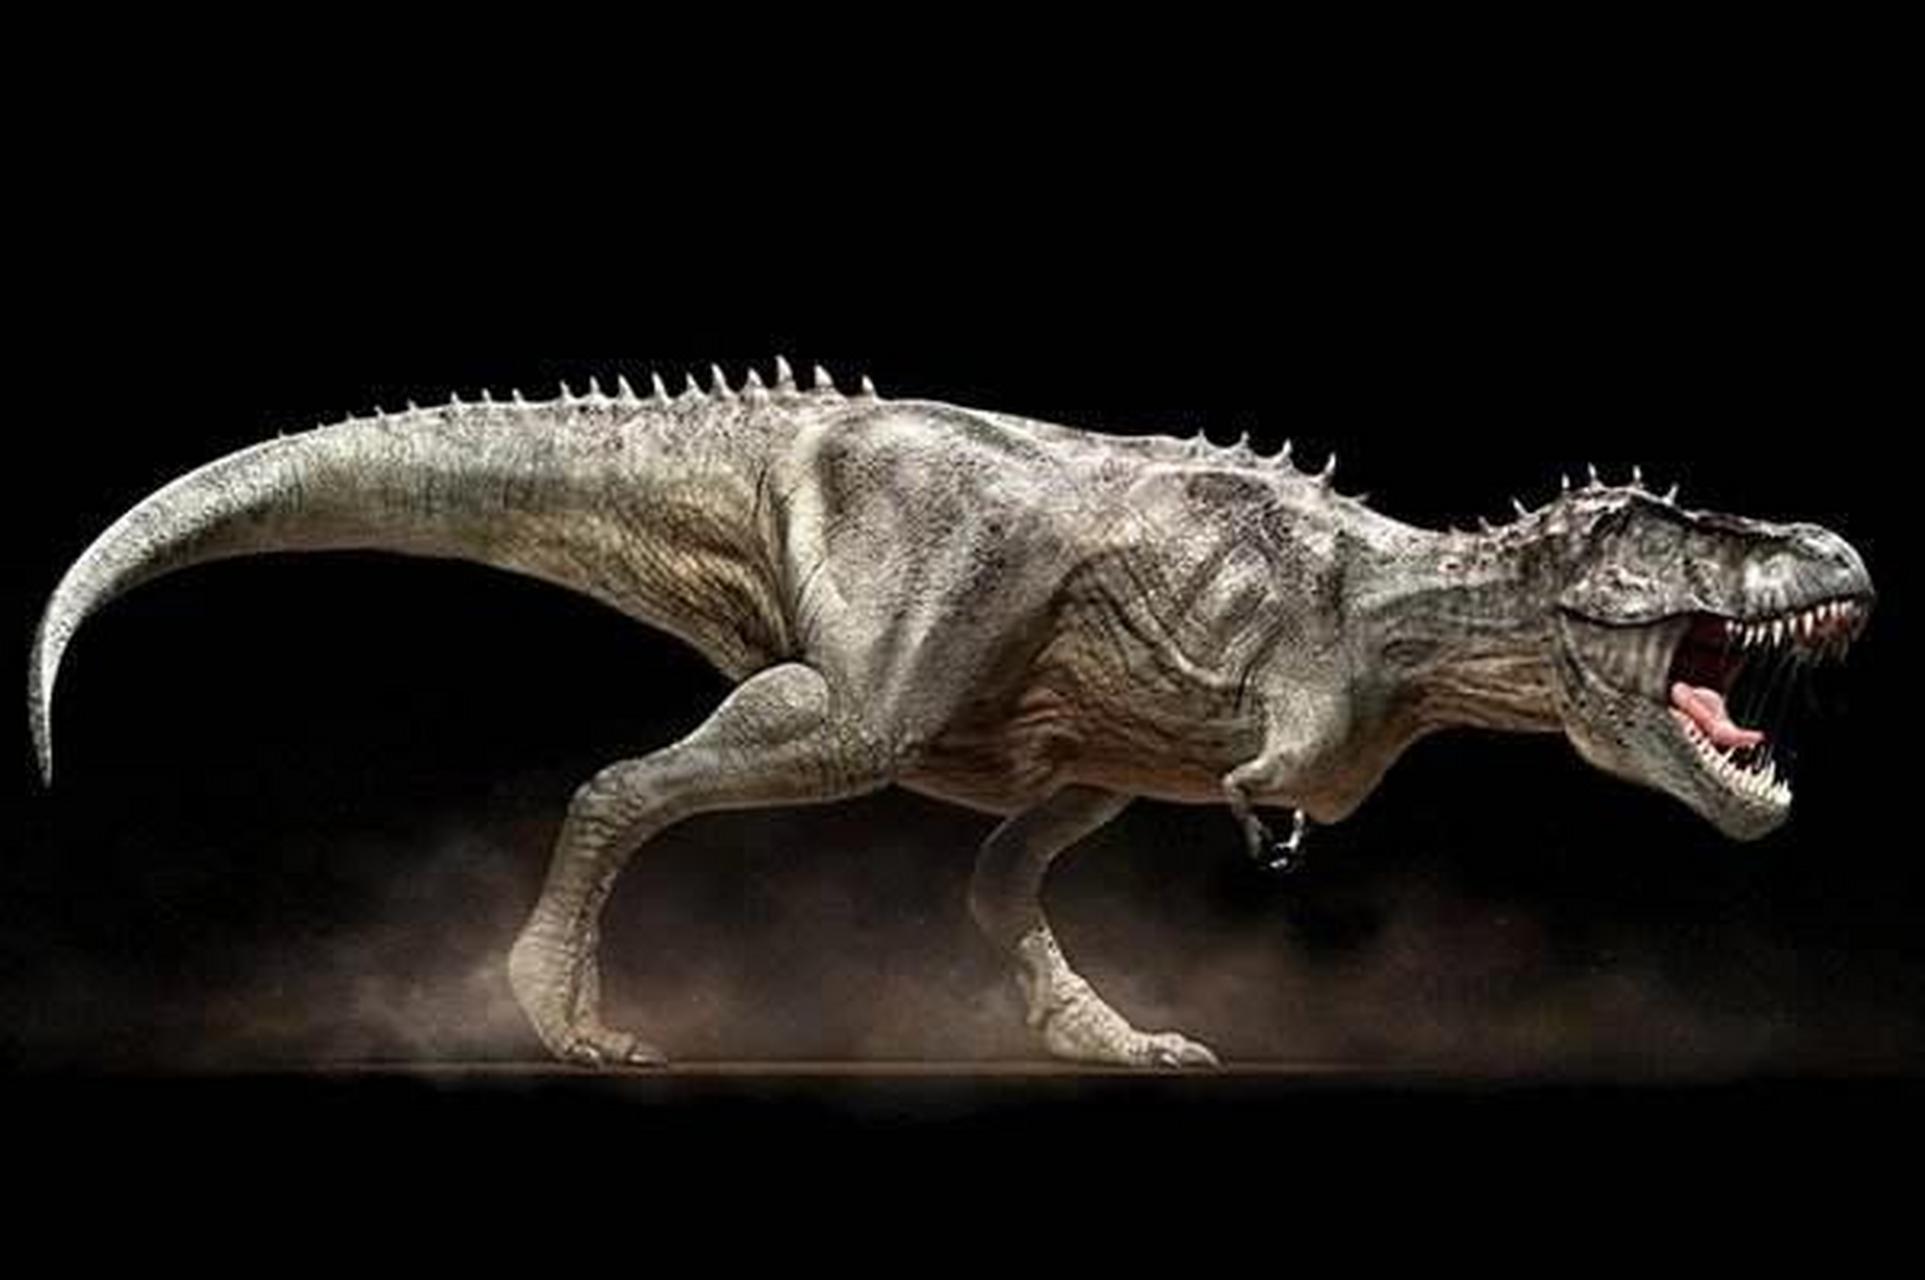 恐龙图鉴 物种:雷克斯暴龙(又叫霸王龙) 年代:晚白